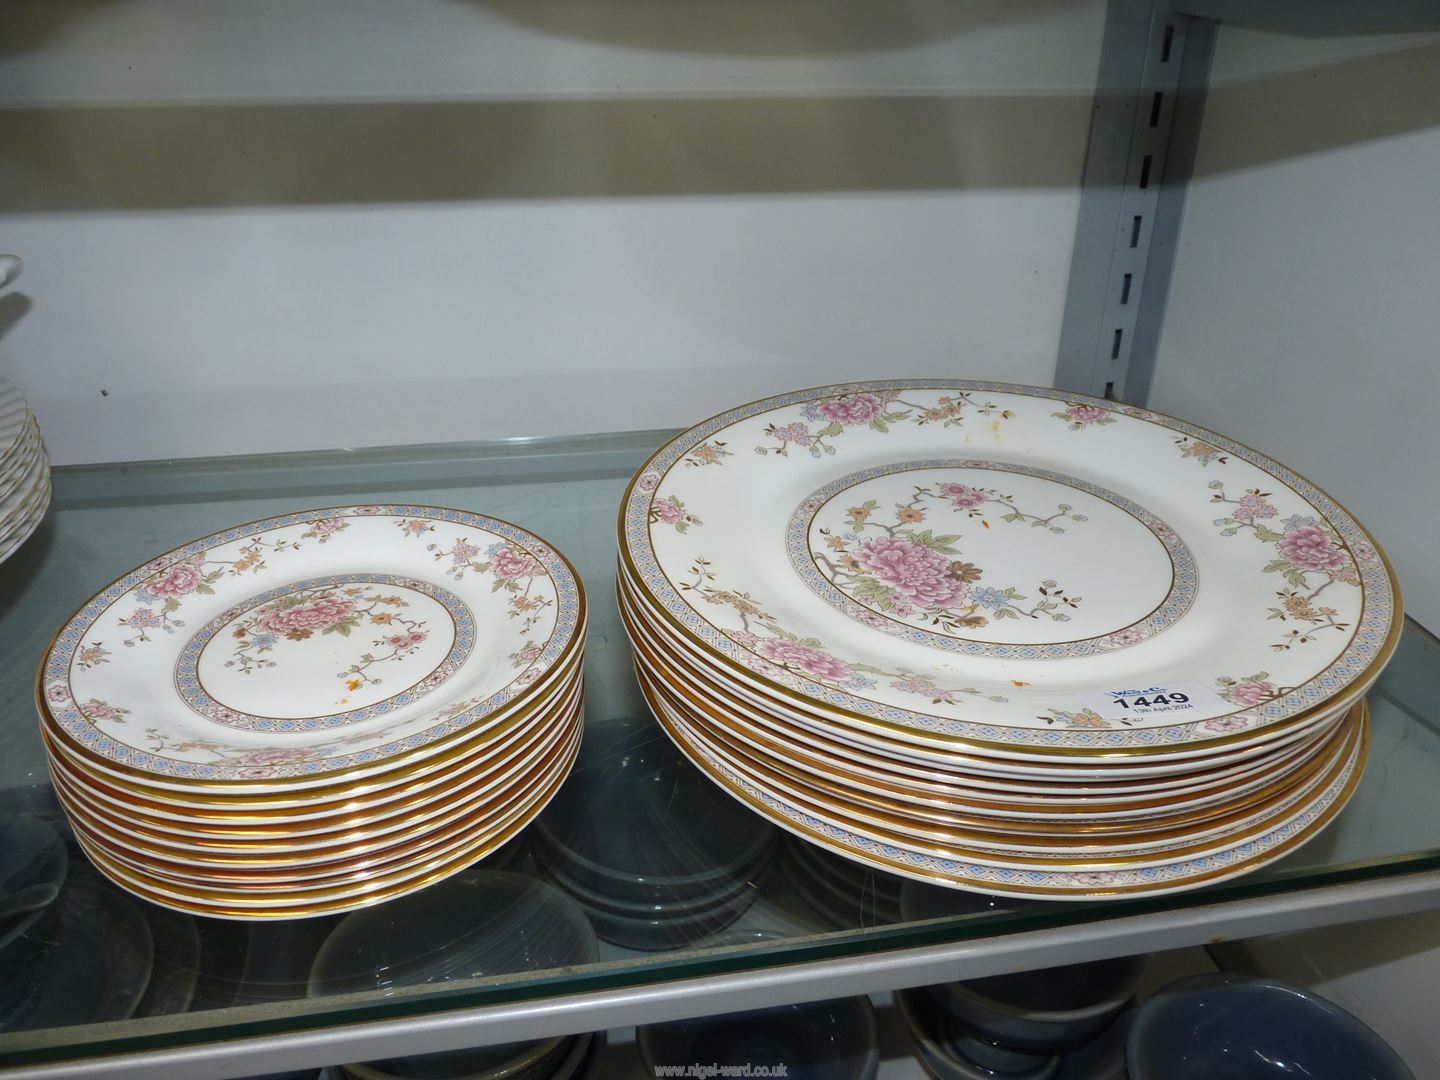 Ten each of Royal Doulton "Canton" tea and dinner plates.